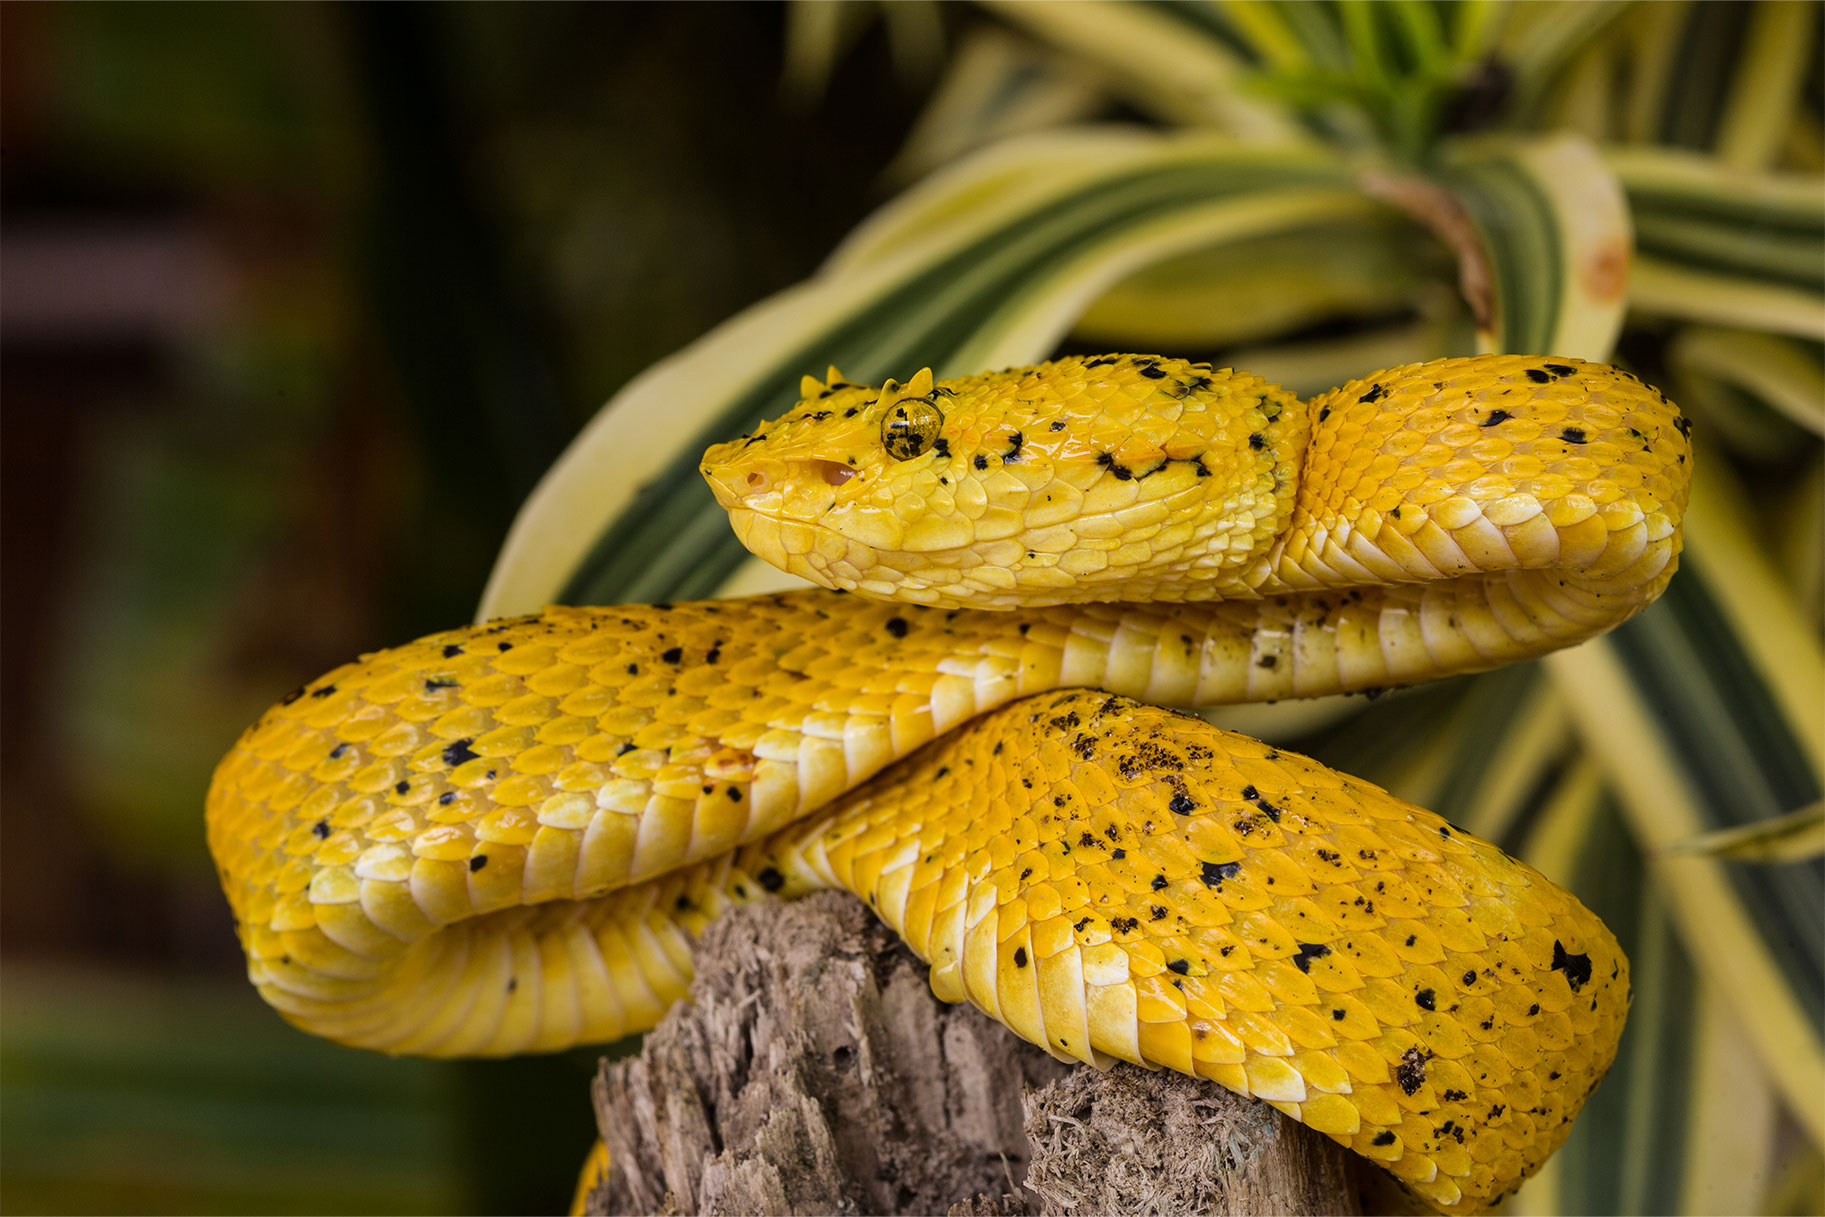 An Eyelash Viper snake